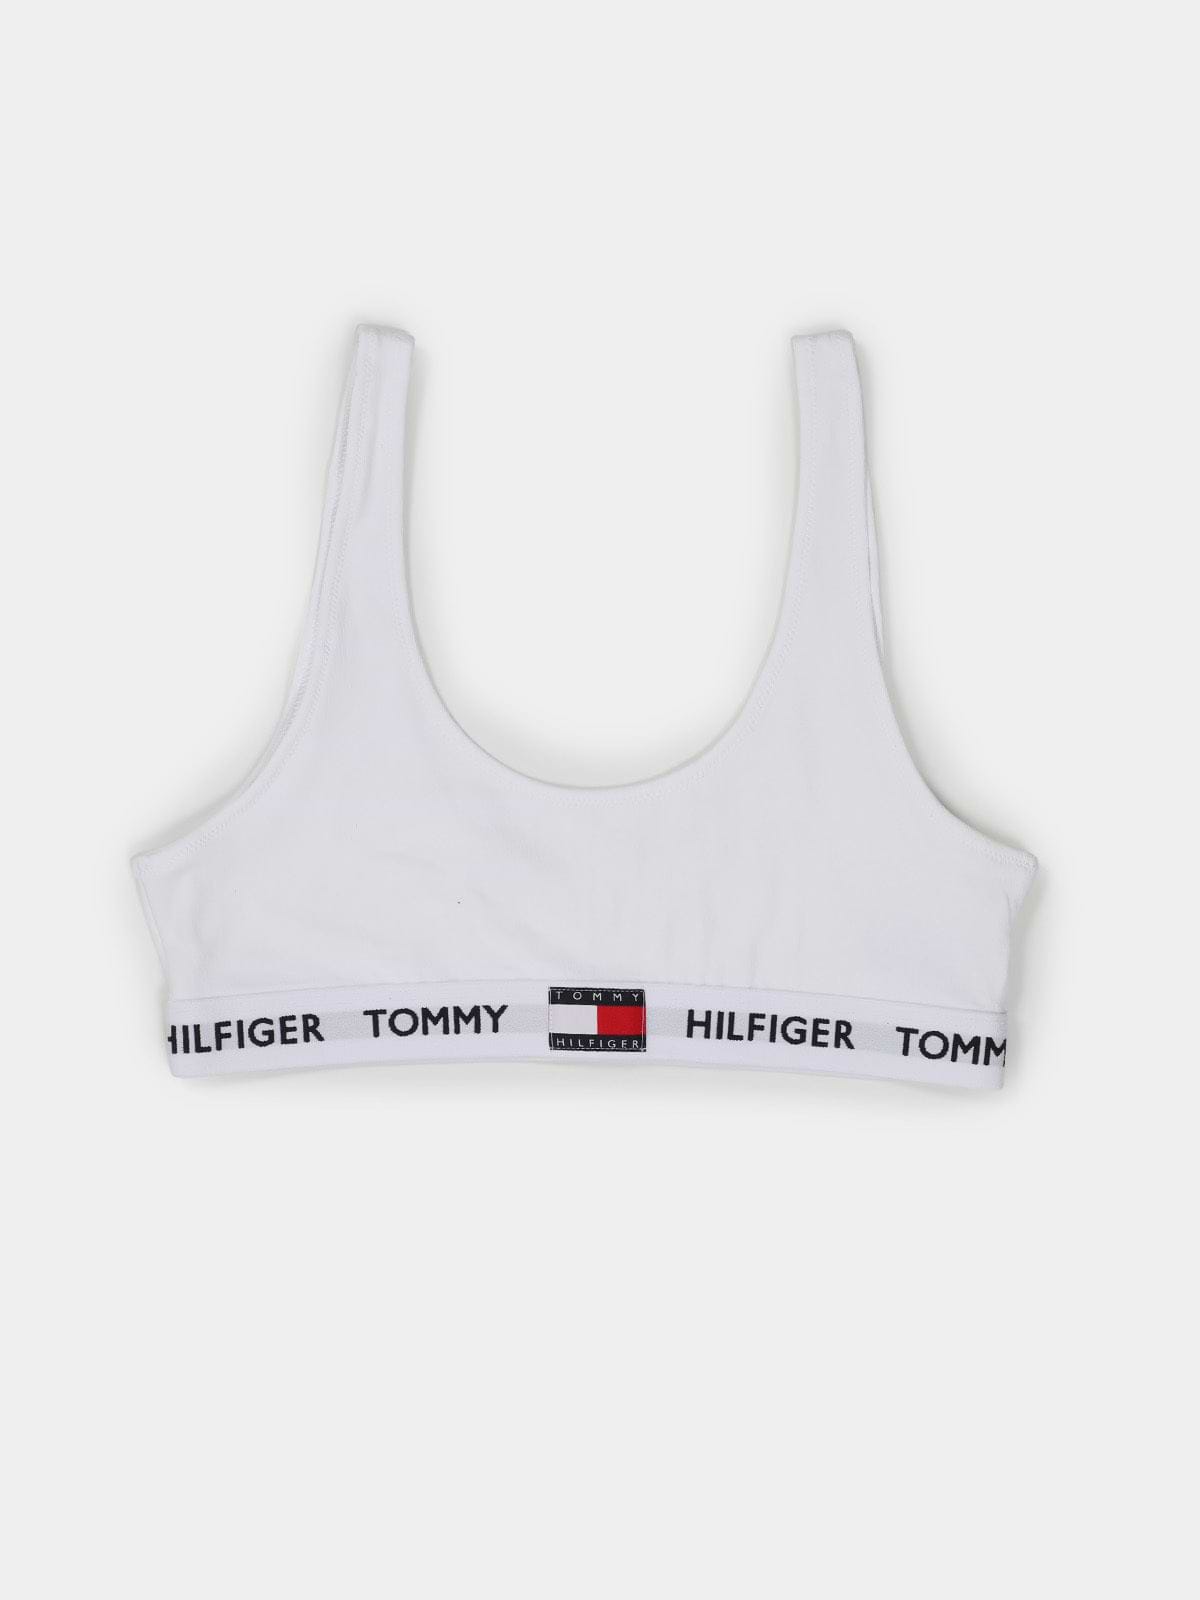 טופ לוגו רקום // נשים- Tommy Hilfiger|טומי הילפיגר